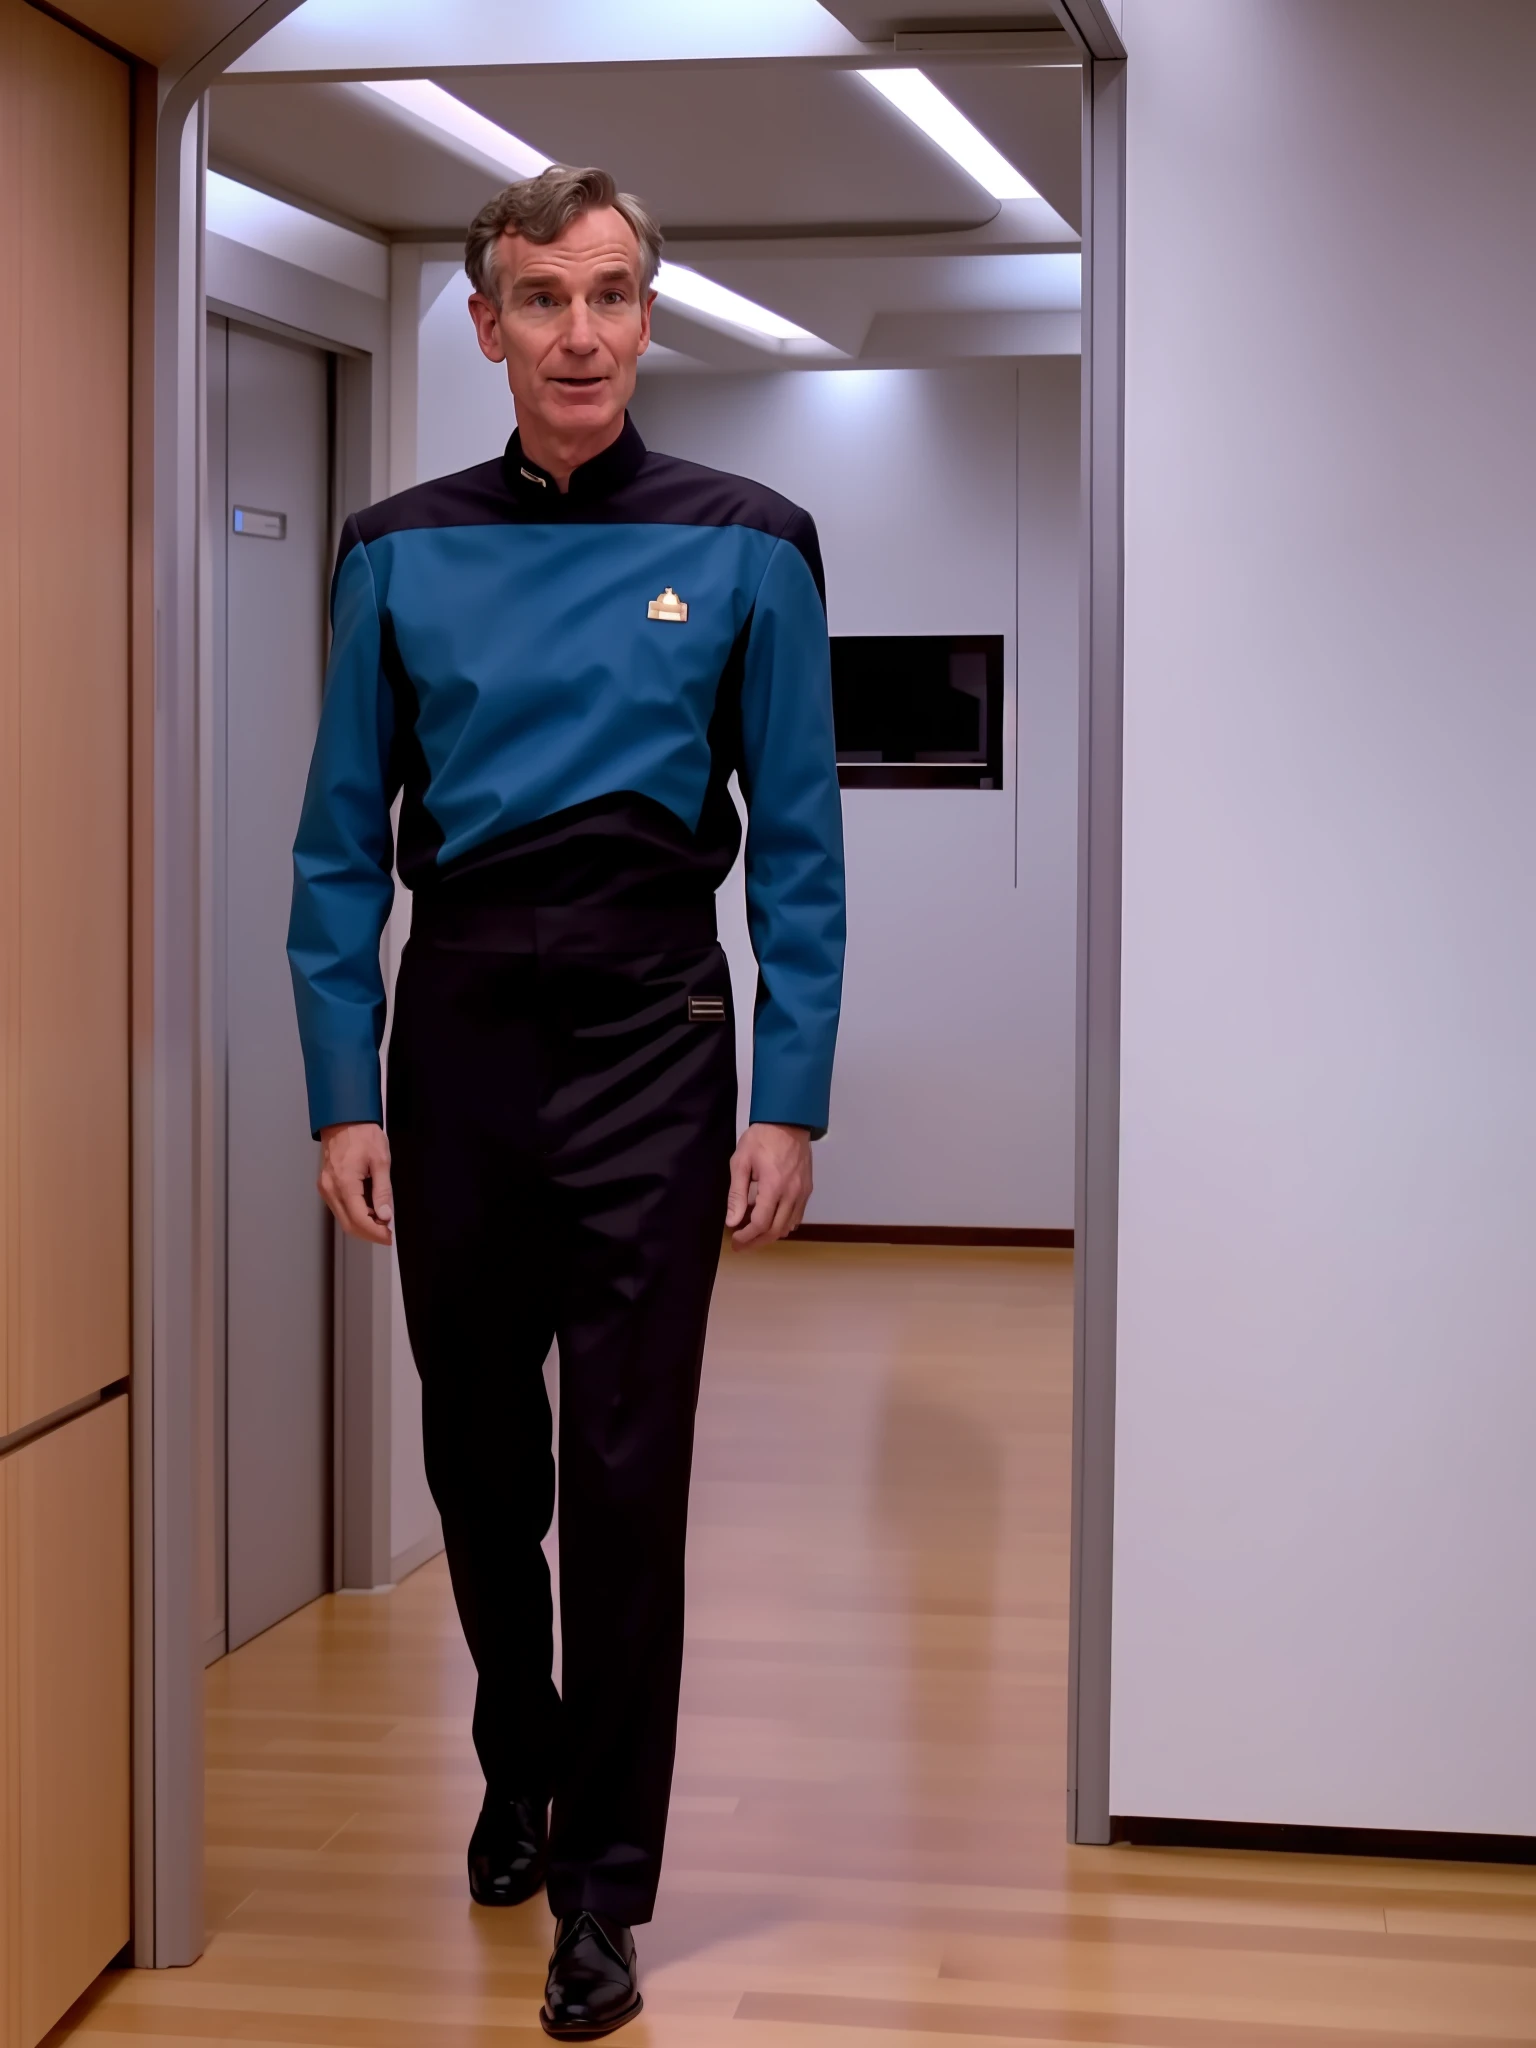 比爾奈 (Bill Nye) 穿著 s3sttngsuit 制服的科學家, 8k超高清, 單眼相機, 柔和的燈光, 高品質, 膠片顆粒, 面部细节丰富,超詳細,杰作品质,富士XT3